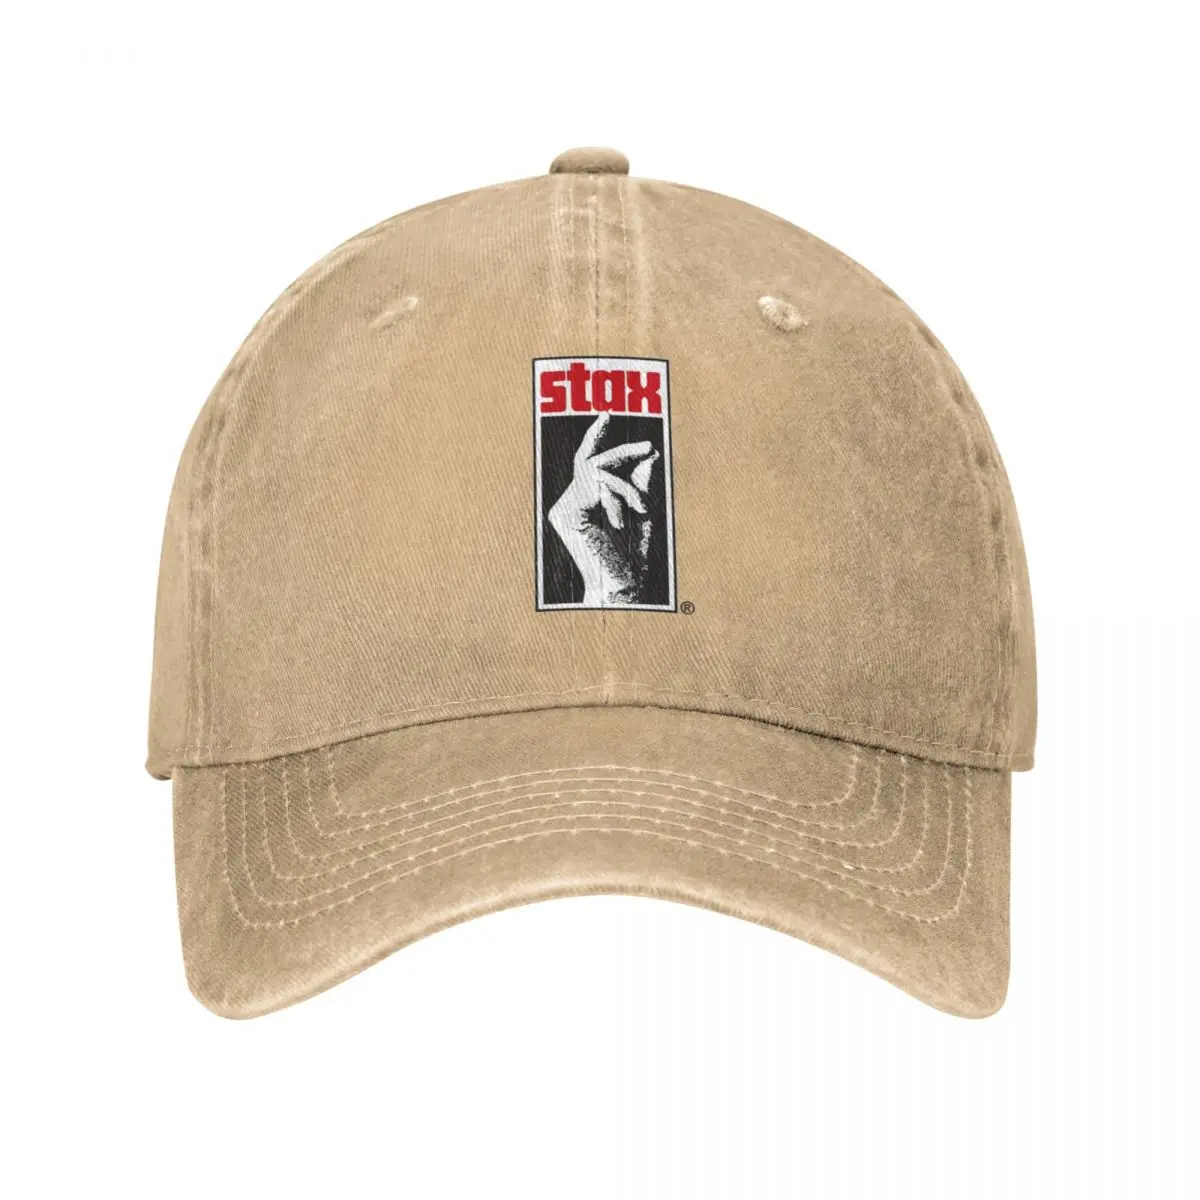 

Ковбойская шляпа Stax с этикеткой, роскошная мужская шляпа, модная кепка-тракер, кепки для женщин и мужчин